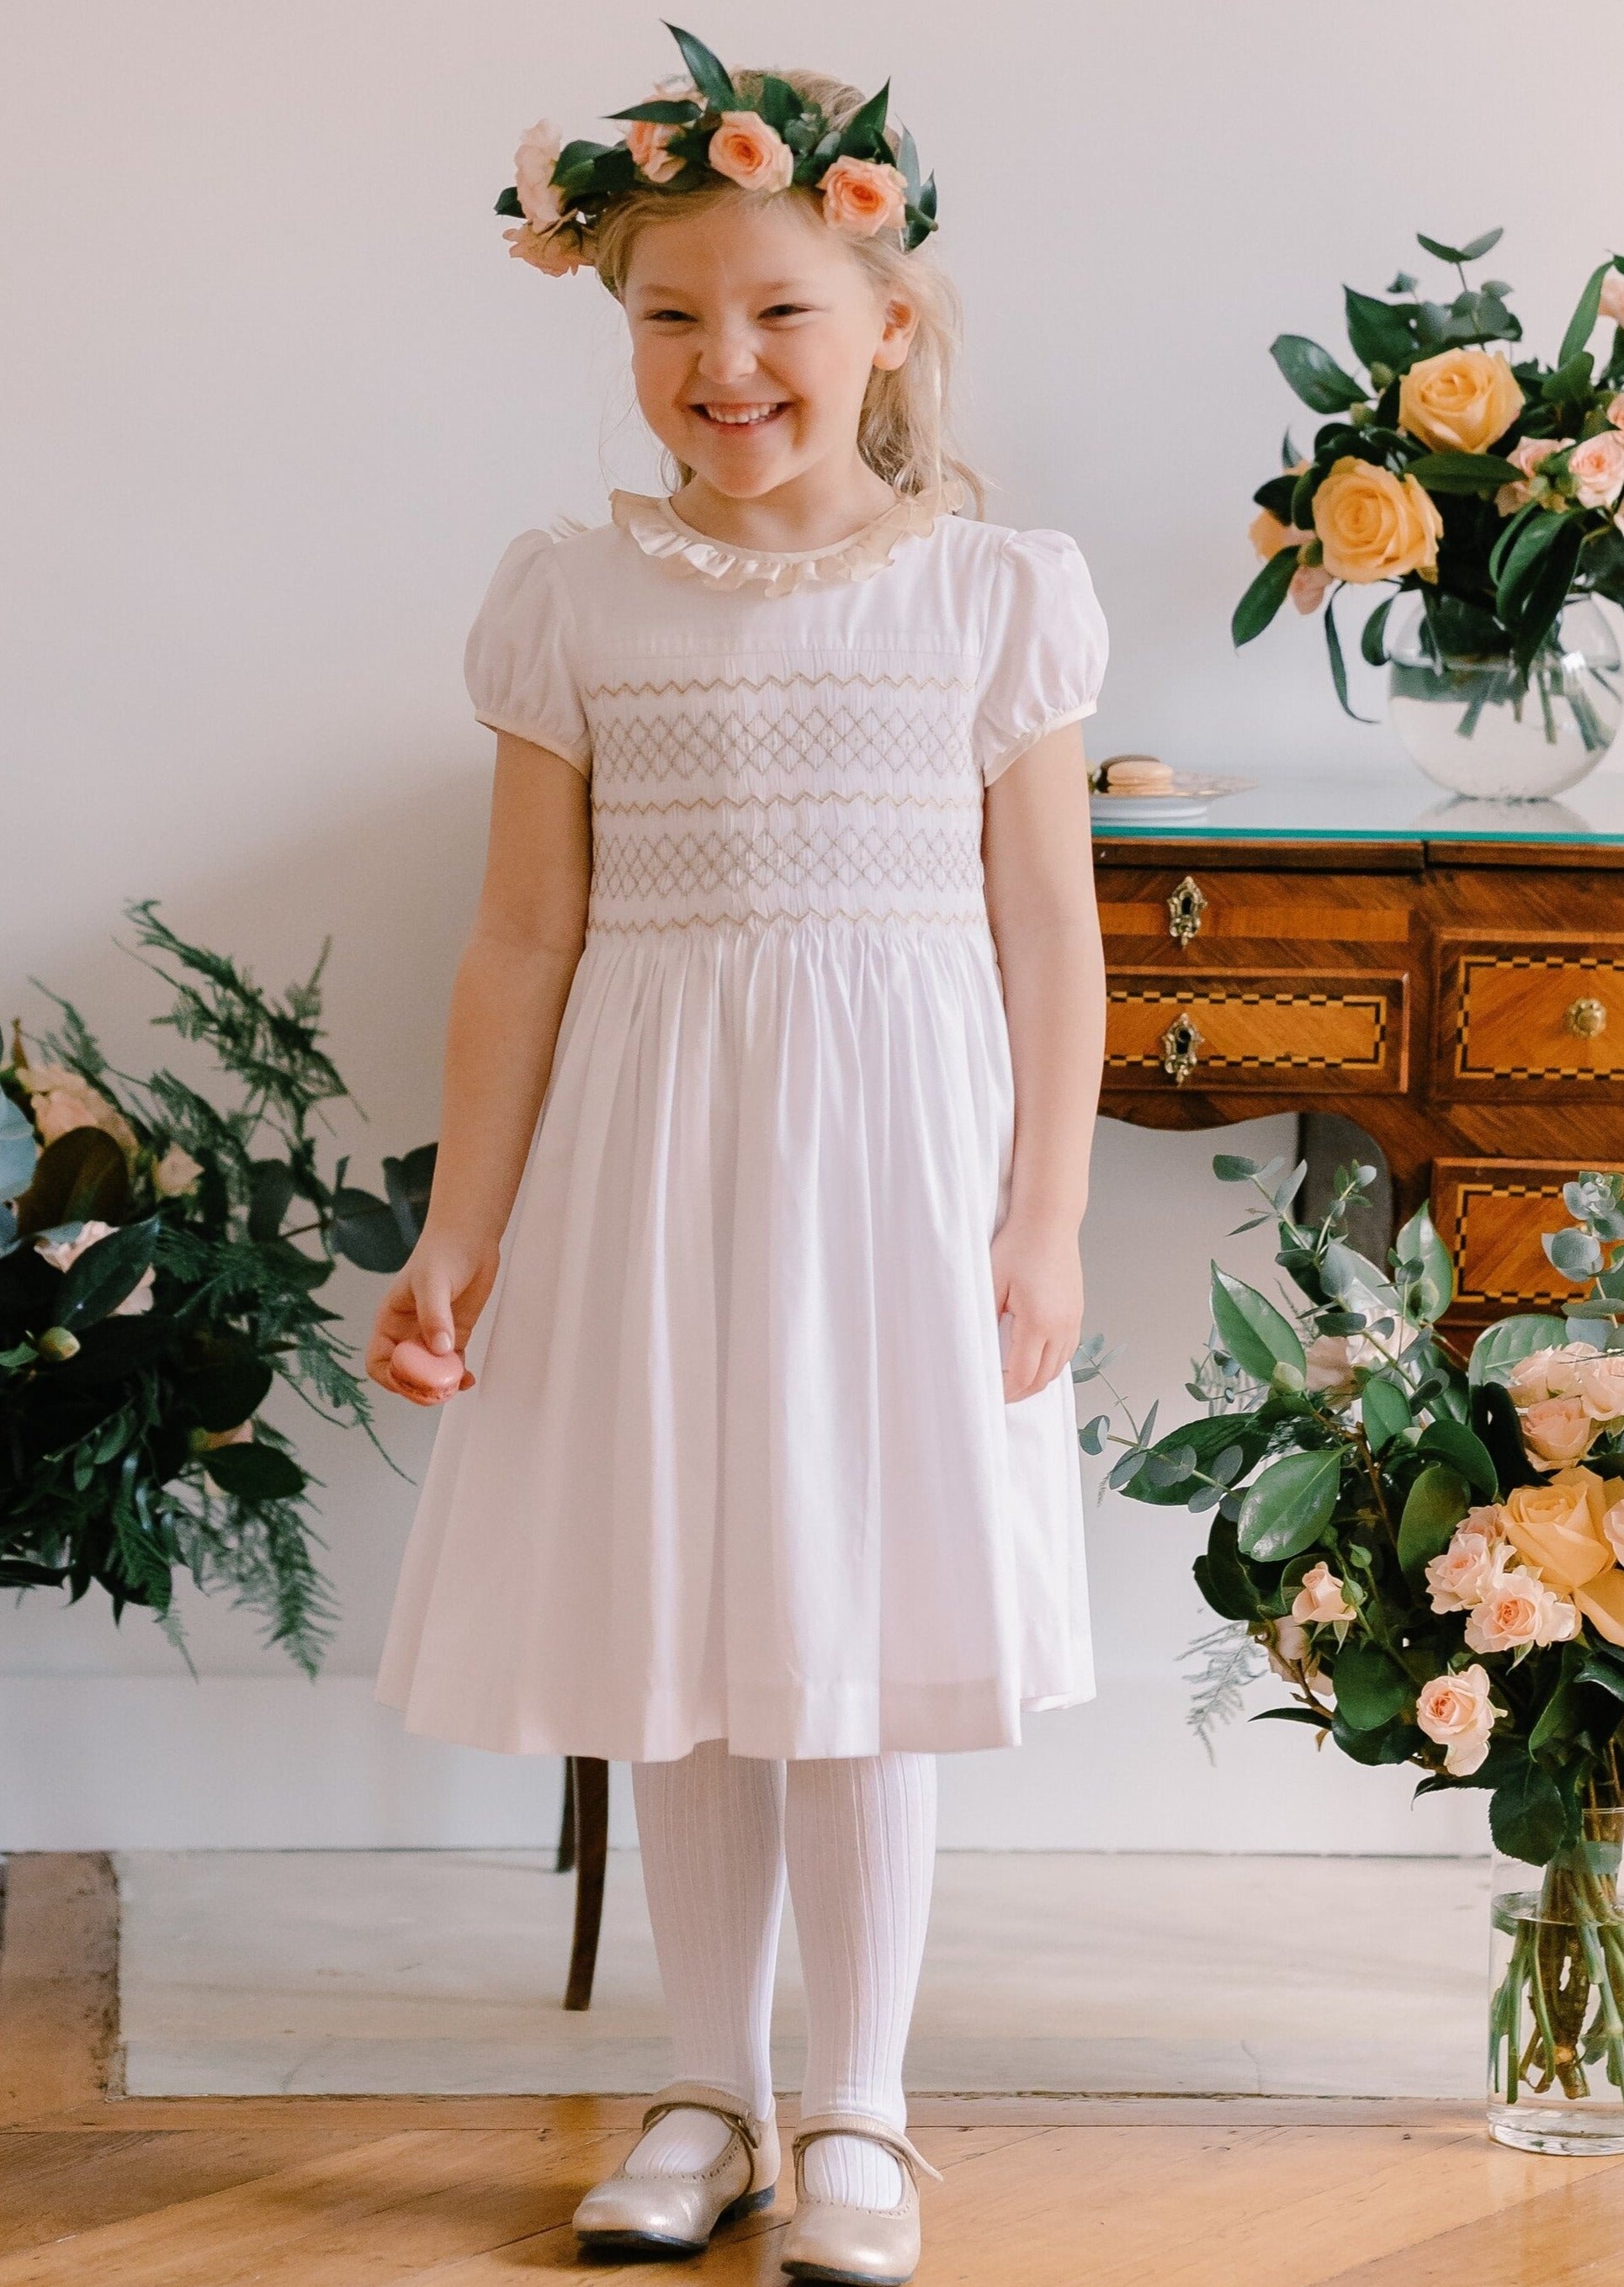 Antoinette Ceremony White Smocked Girl Dress